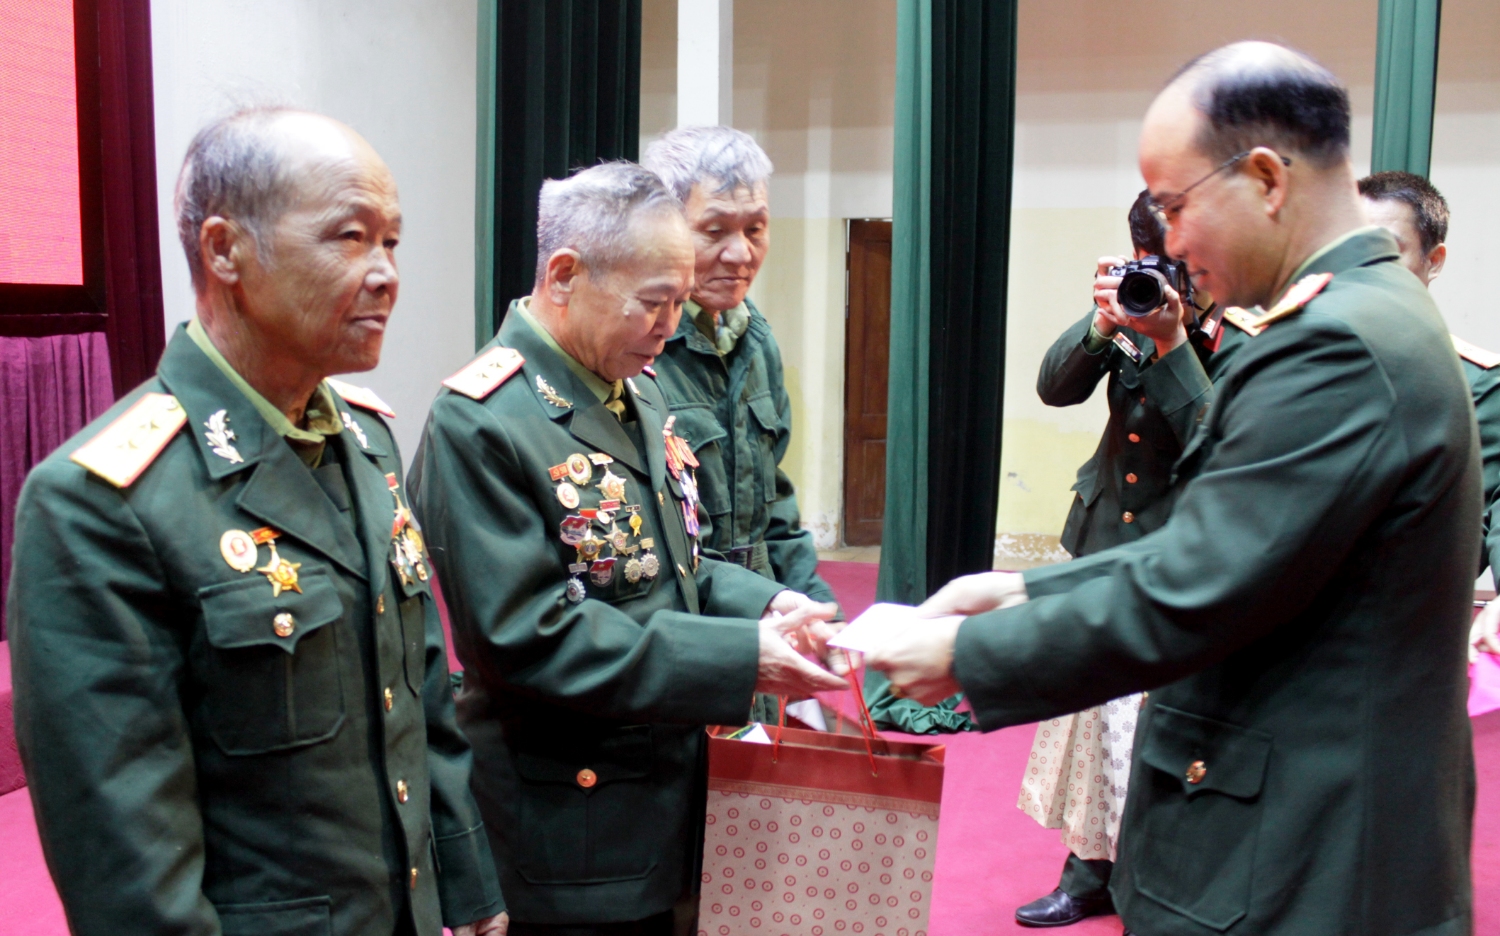 Thủ trưởng Bộ Chỉ huy Quân sự tỉnh tặng quà các cán bộ cao cấp quân đội đã nghỉ hưu, nghỉ công tác trên địa bàn tỉnh tại buổi gặp mặt